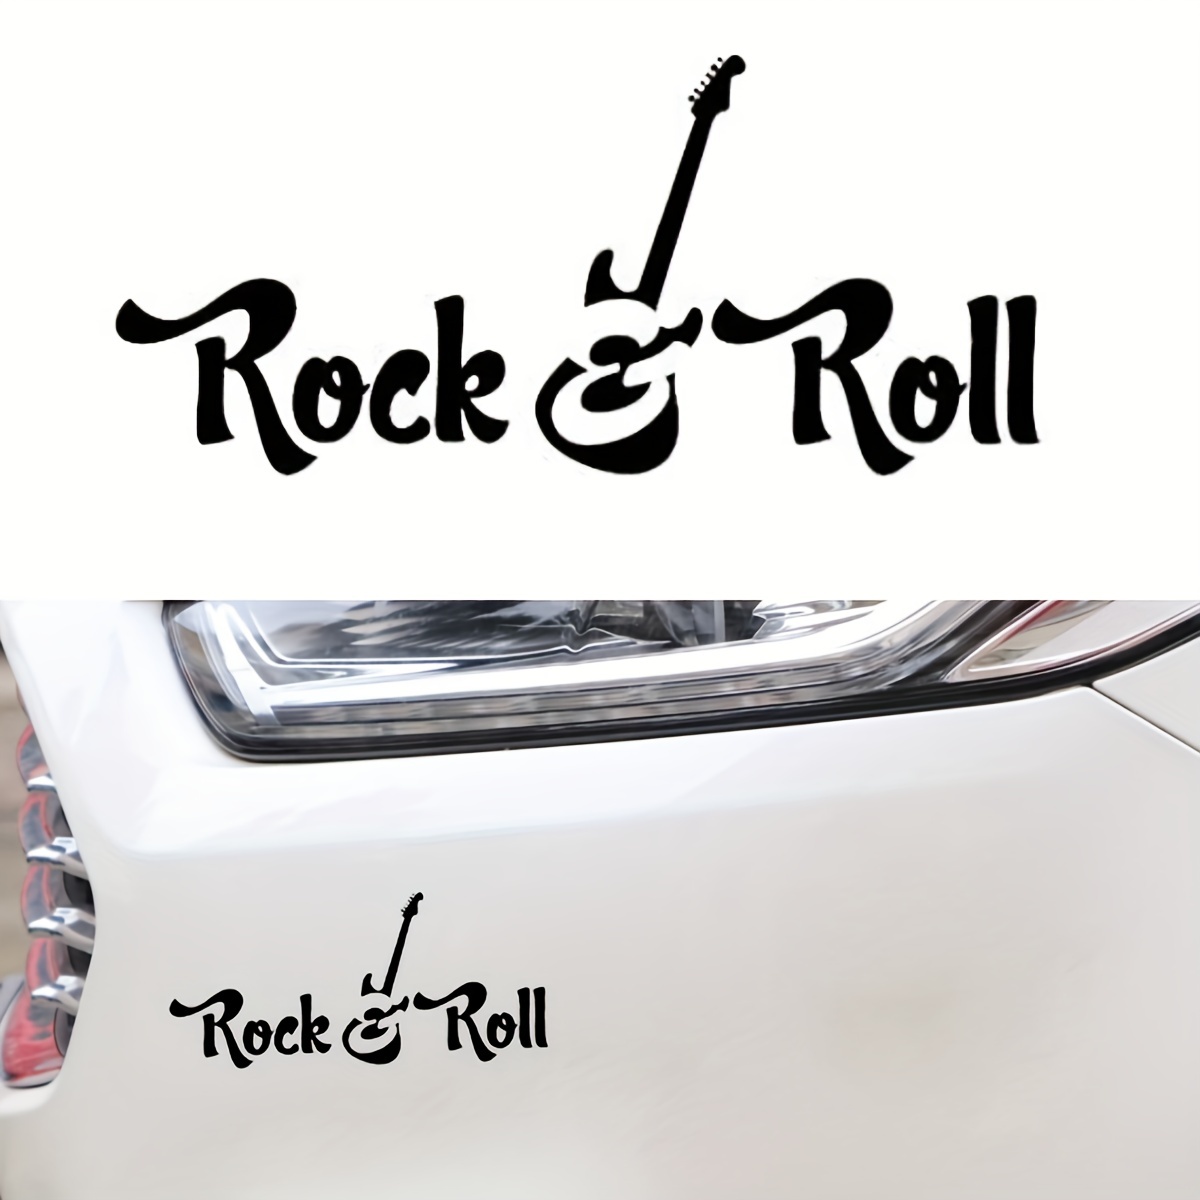 5.04*2.28inch Cool Rock N Roll Guitar Coolest Car Sticker, Styling Auto  Window Rear Windshield Scratch Proof Waterproof Decals